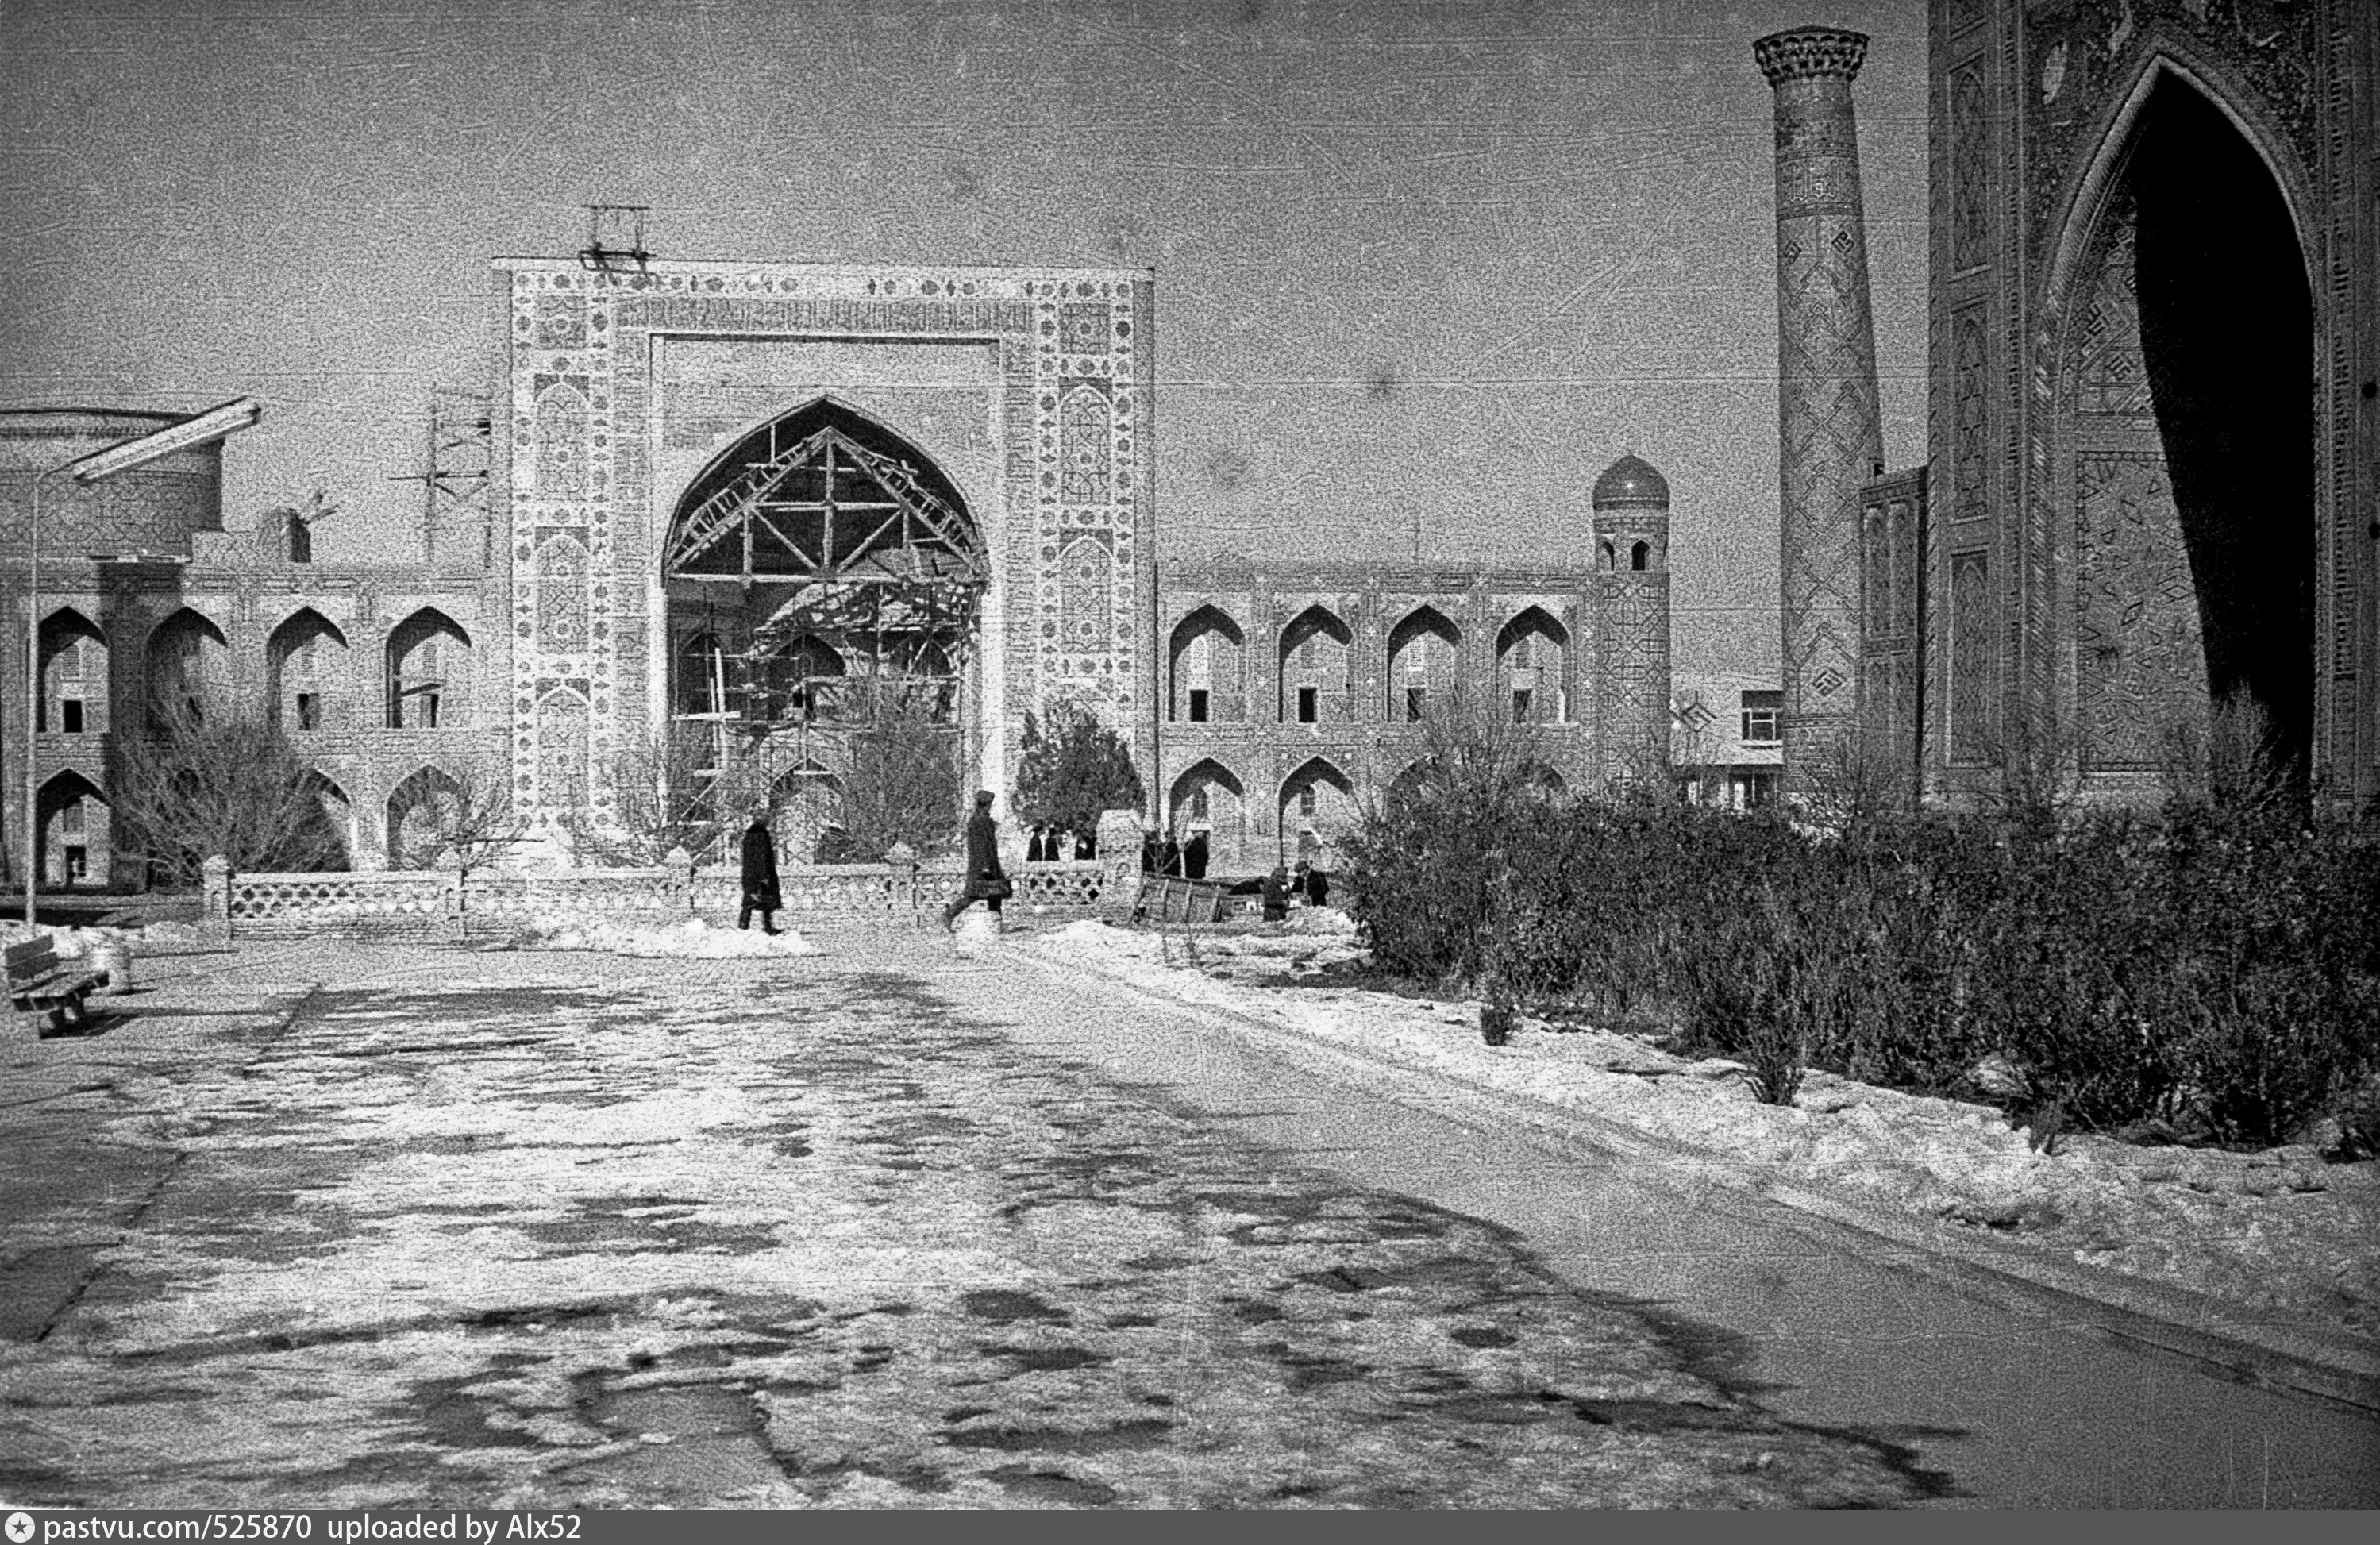 Самарканд Регистан 1930